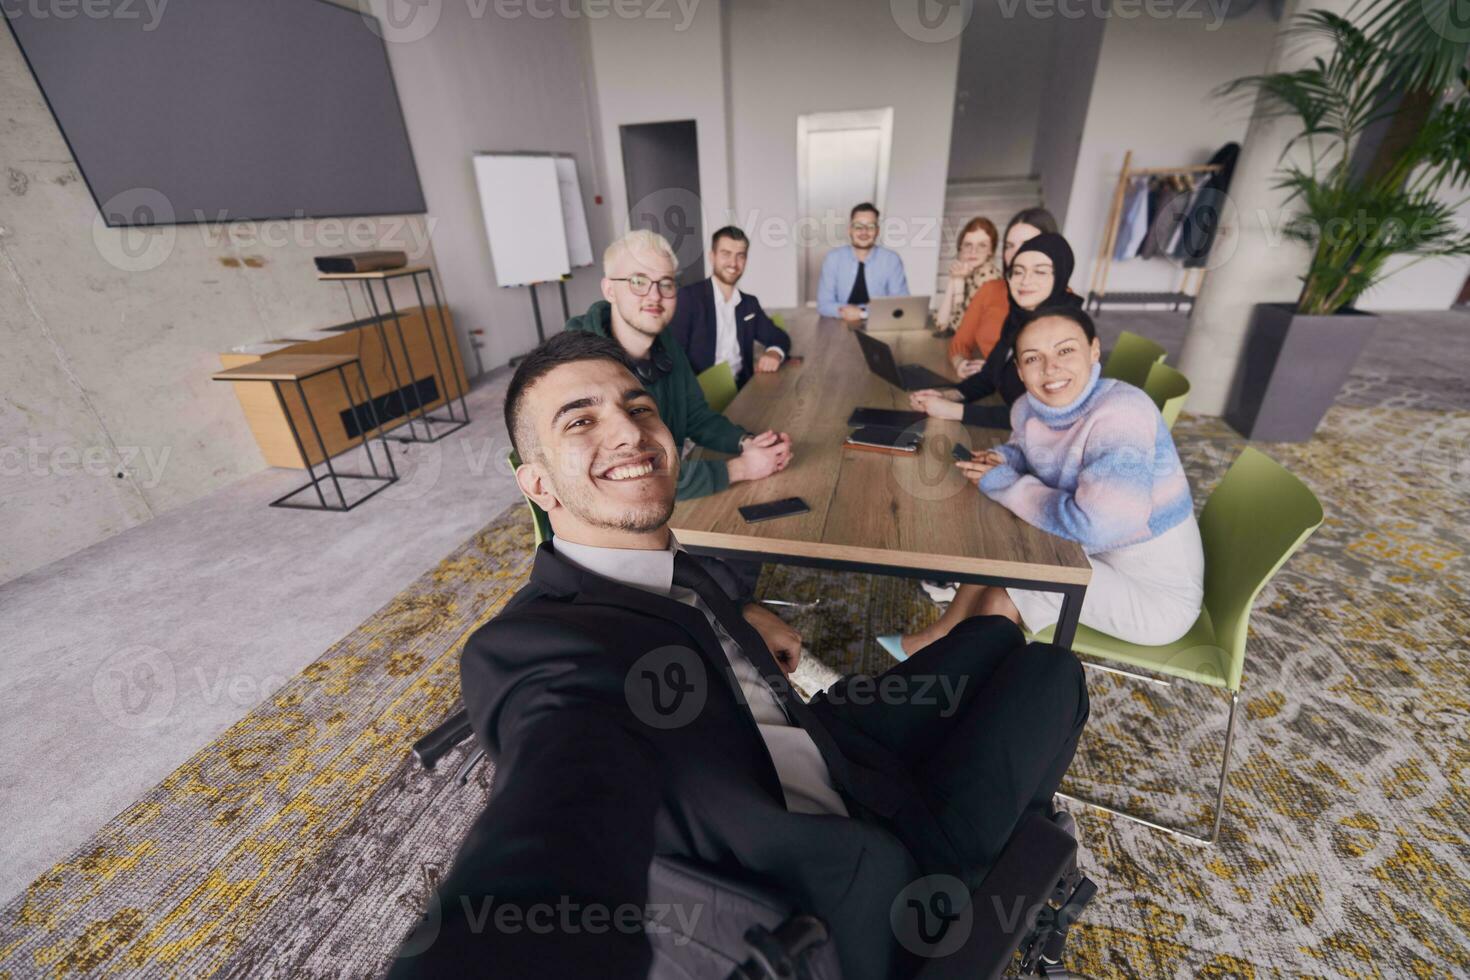 in een modern kantoor, een groep van zakenlieden verzamelt in de omgeving van een tafel gedurende een ontmoeting, vastleggen een moment van kameraadschap en samenspel net zo ze nemen een selfie foto